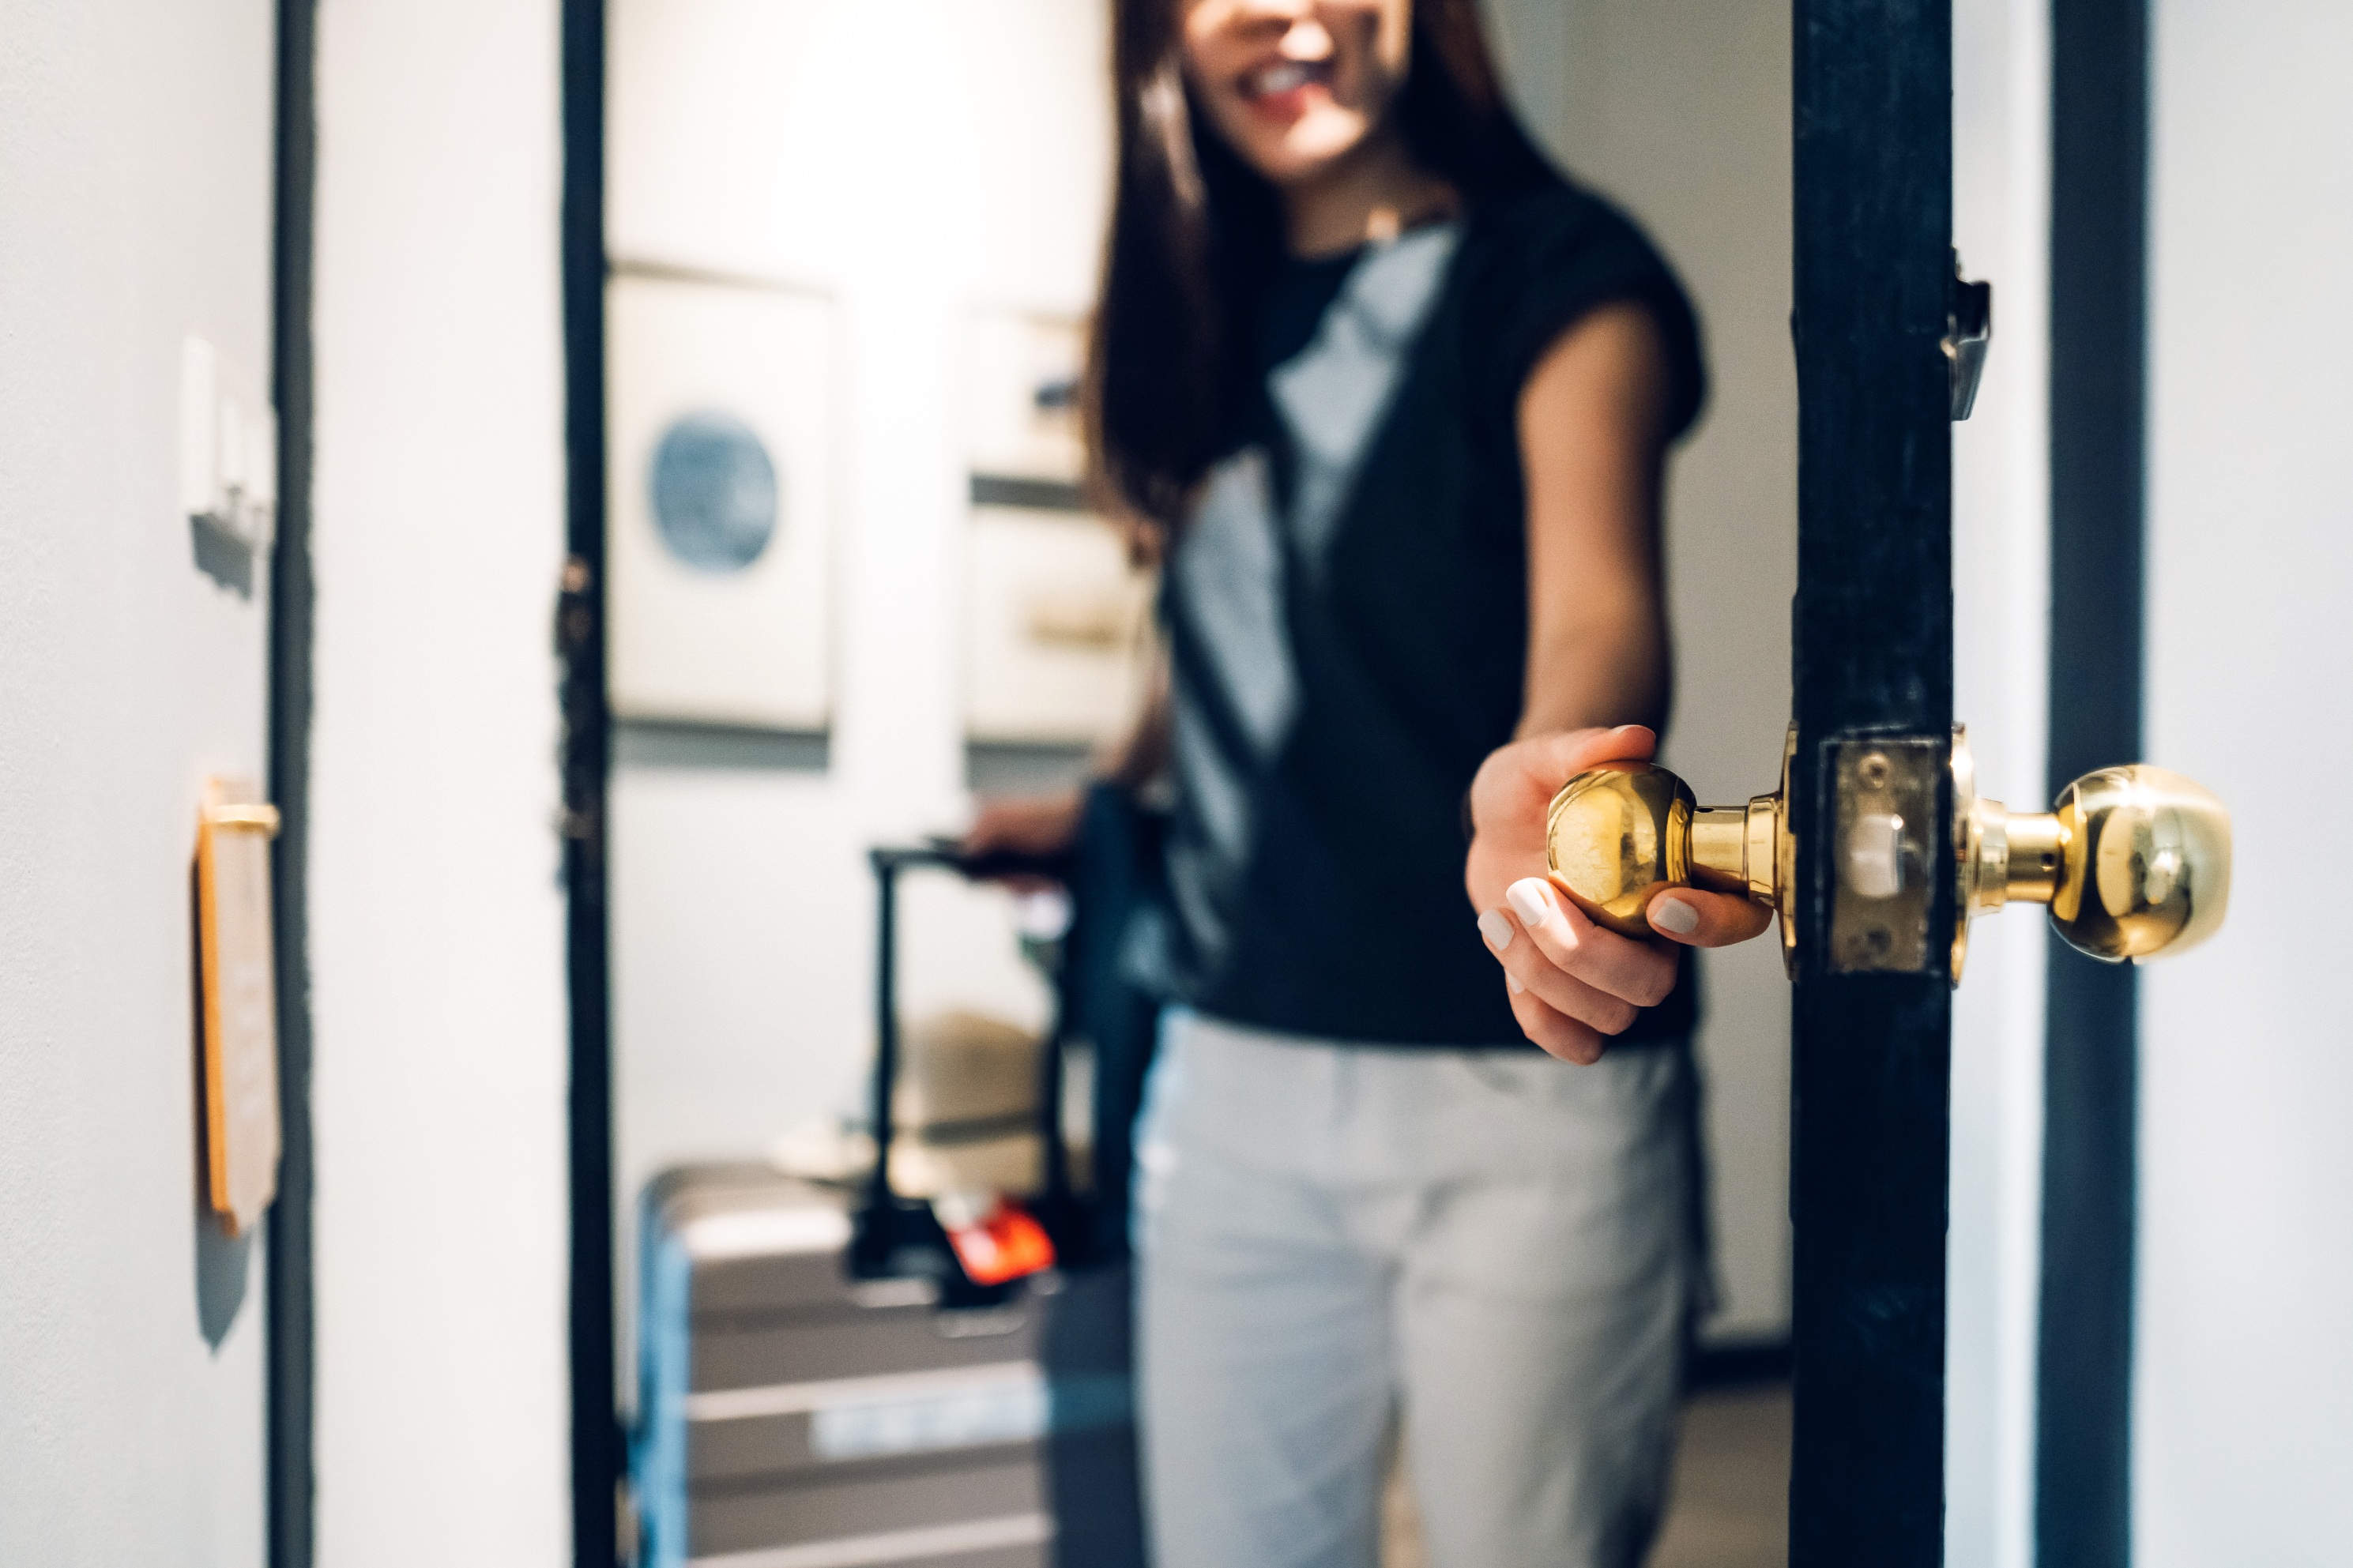 Woman opening a door, smiling, focus on door handle